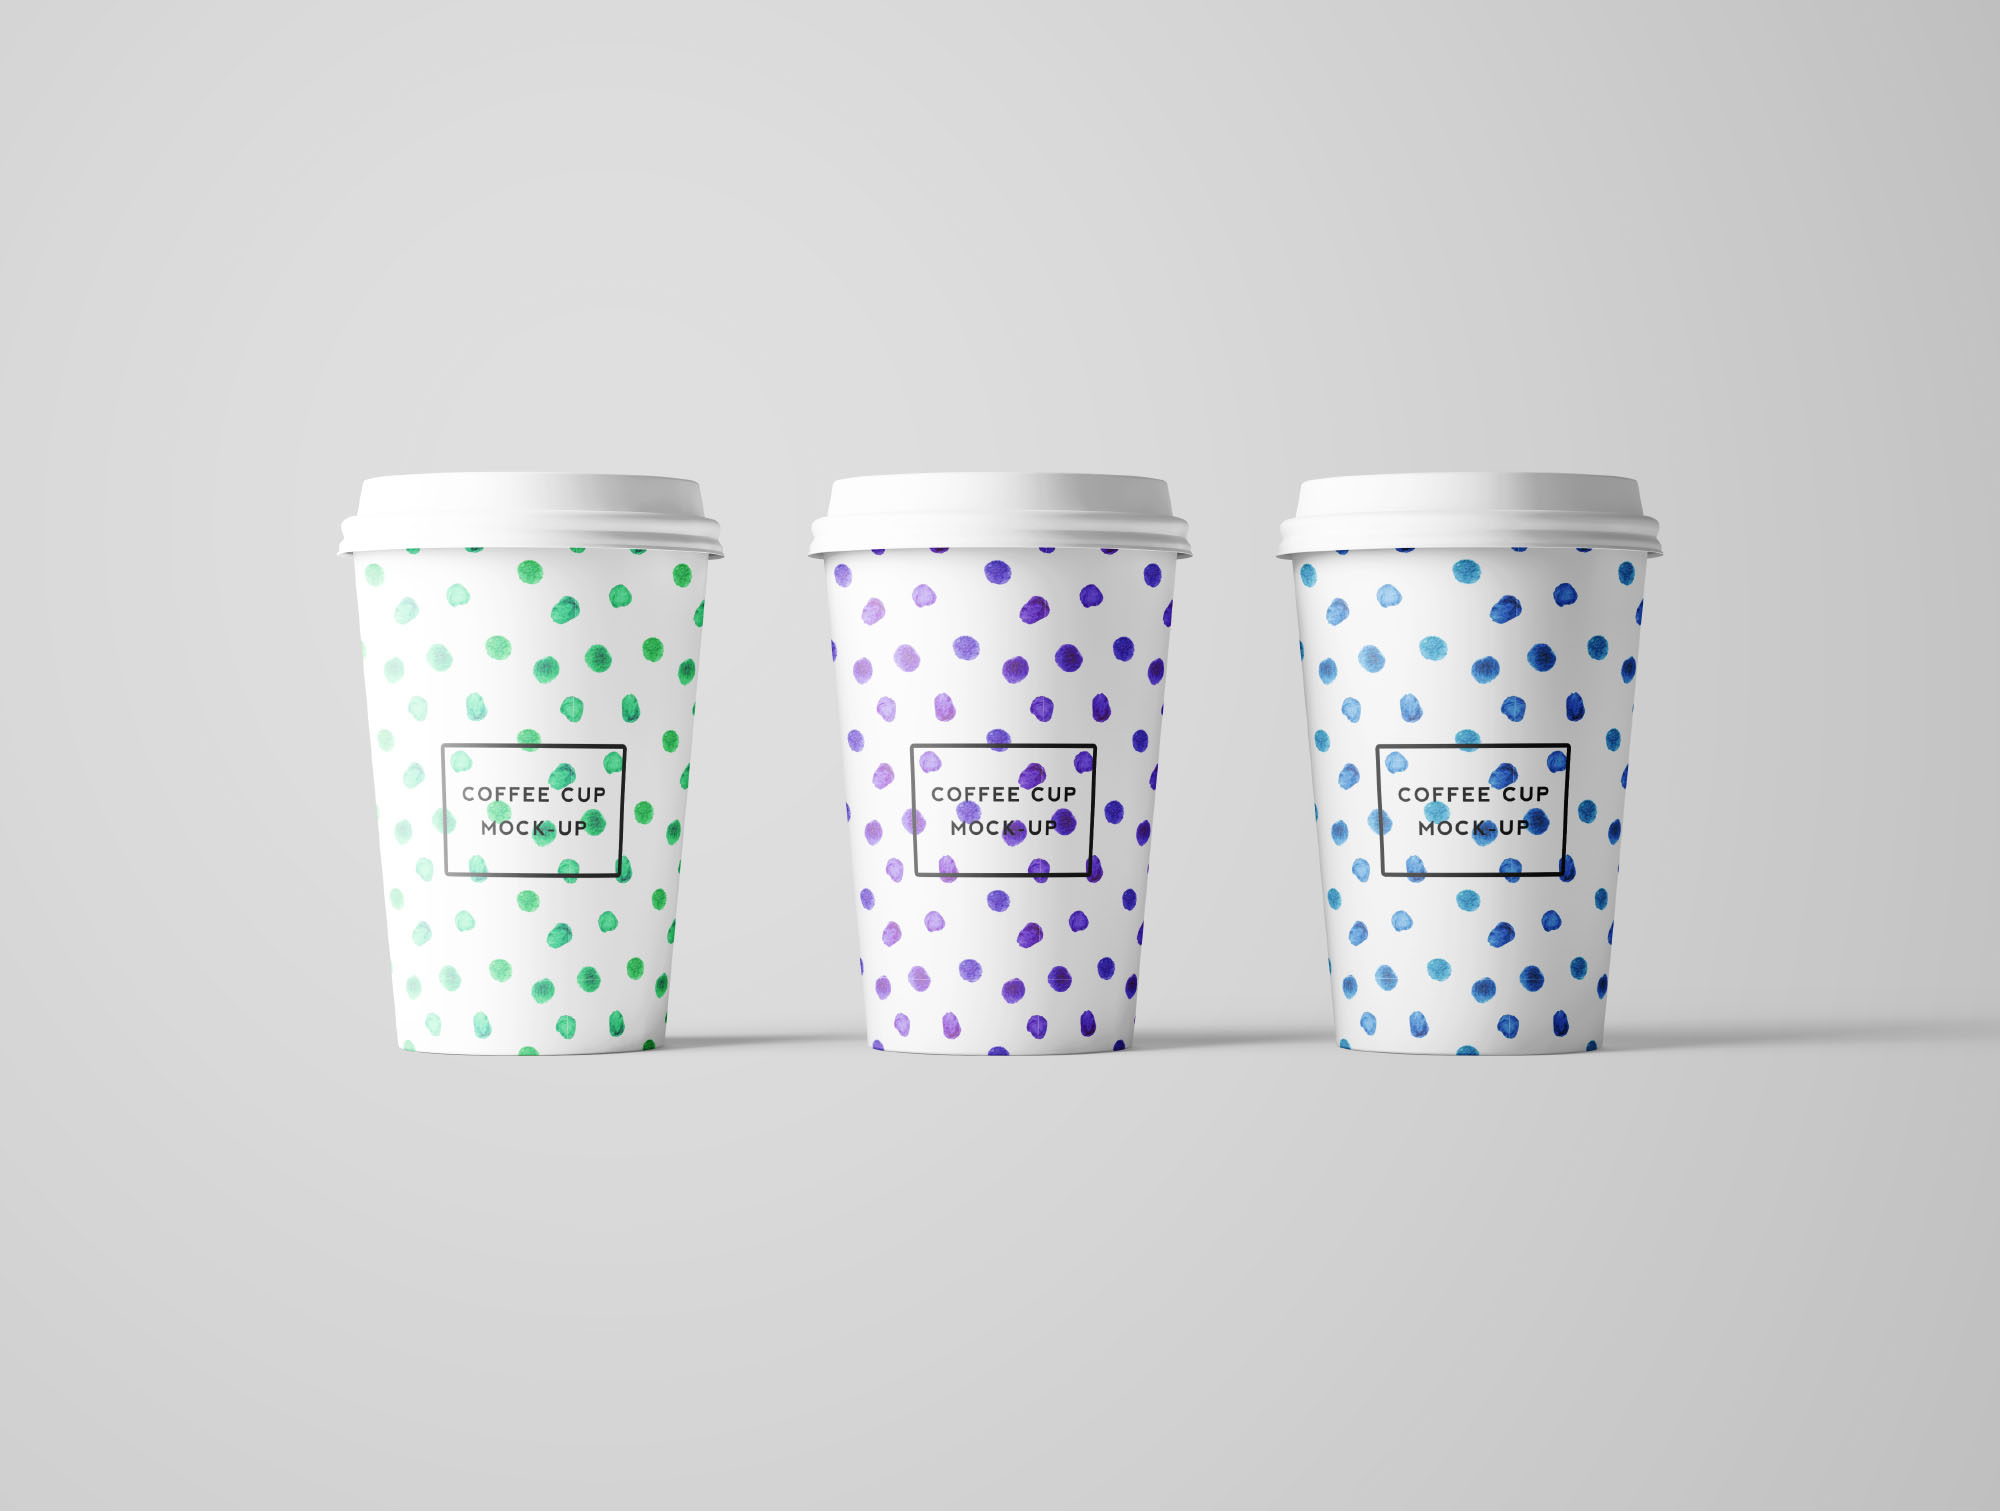 7个咖啡纸杯设计图PSD样机模板 7 PSD Coffee Cup Mockups插图(5)